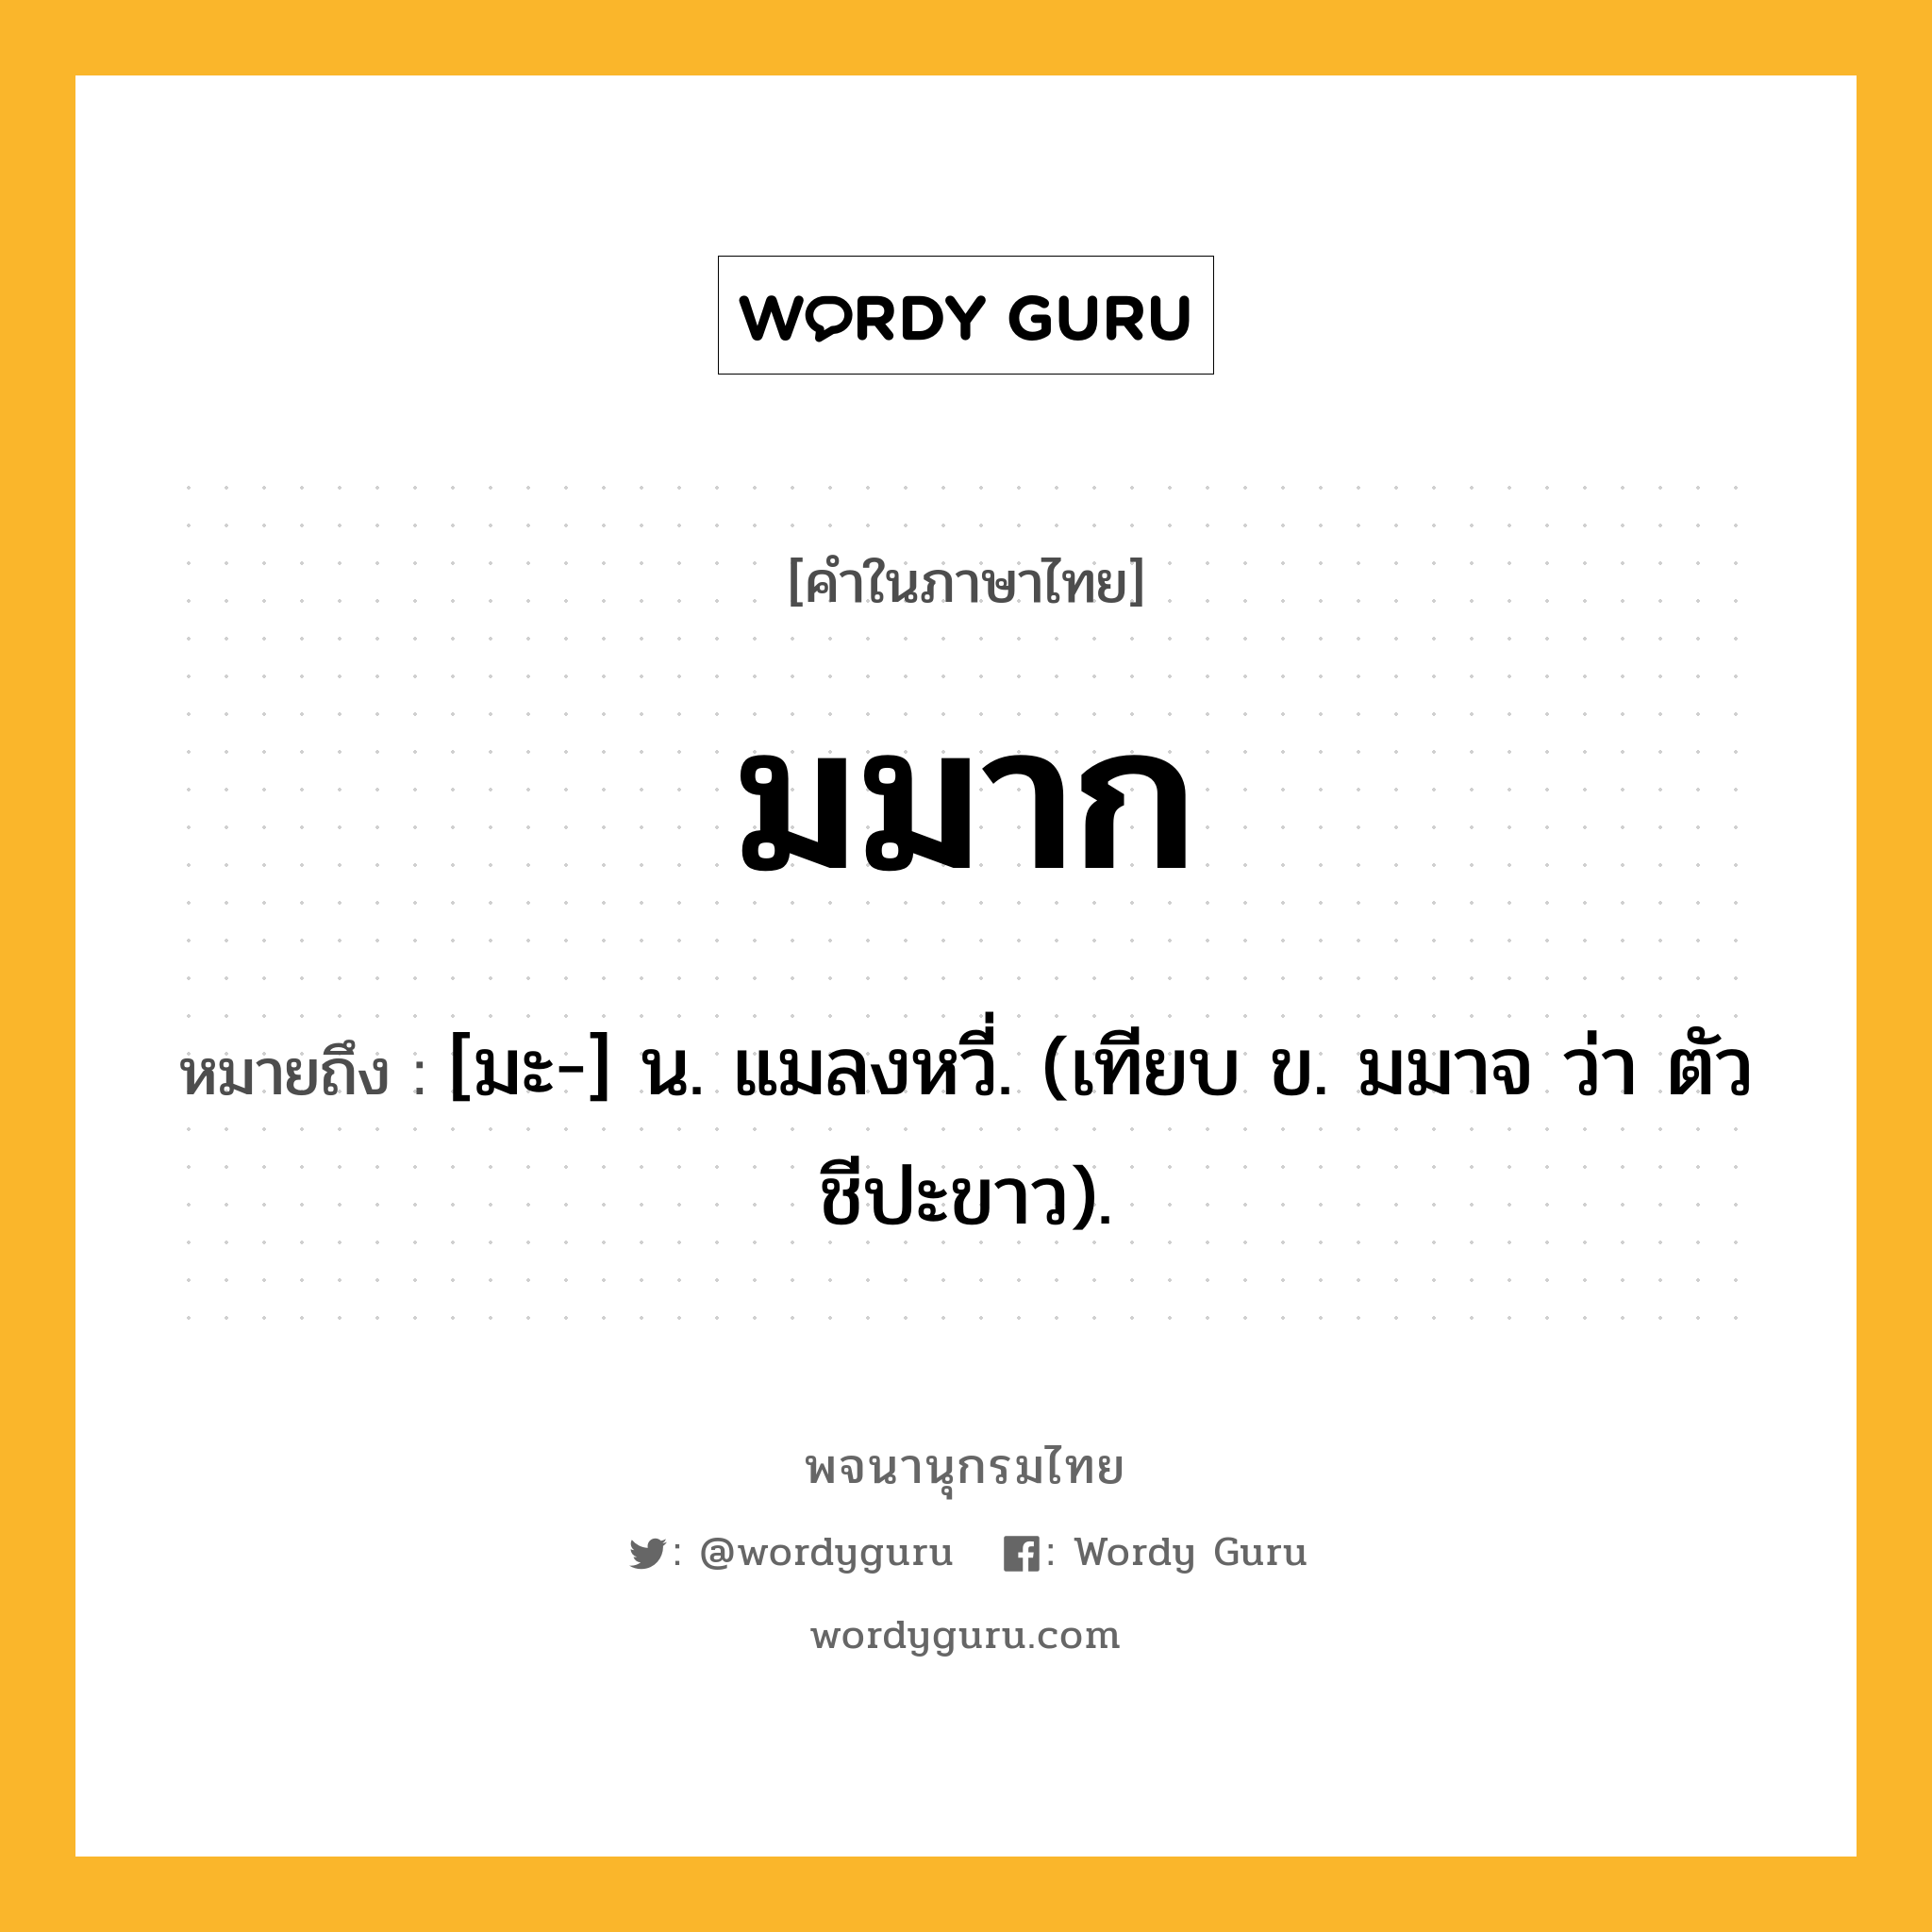 มมาก ความหมาย หมายถึงอะไร?, คำในภาษาไทย มมาก หมายถึง [มะ-] น. แมลงหวี่. (เทียบ ข. มมาจ ว่า ตัวชีปะขาว).